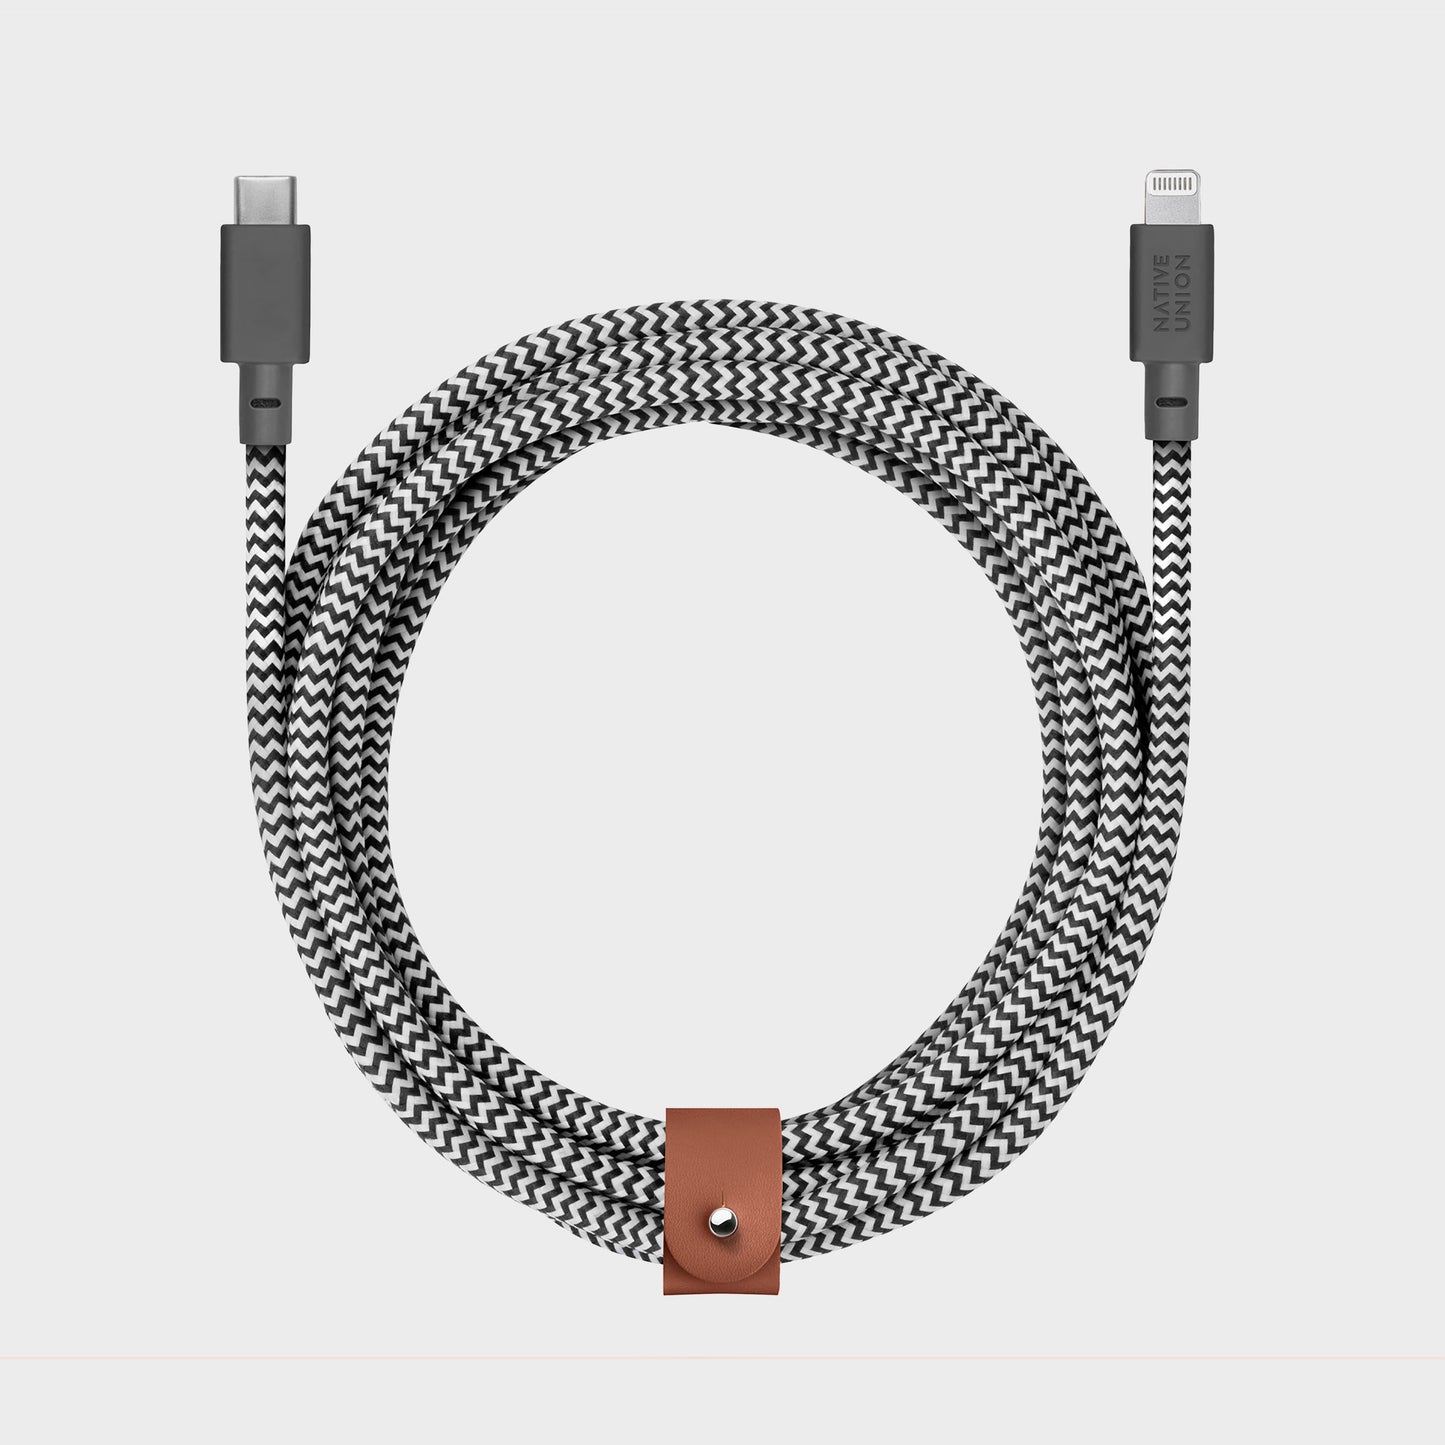 Native Union Belt Cable 3m (USB-C til Lightning)